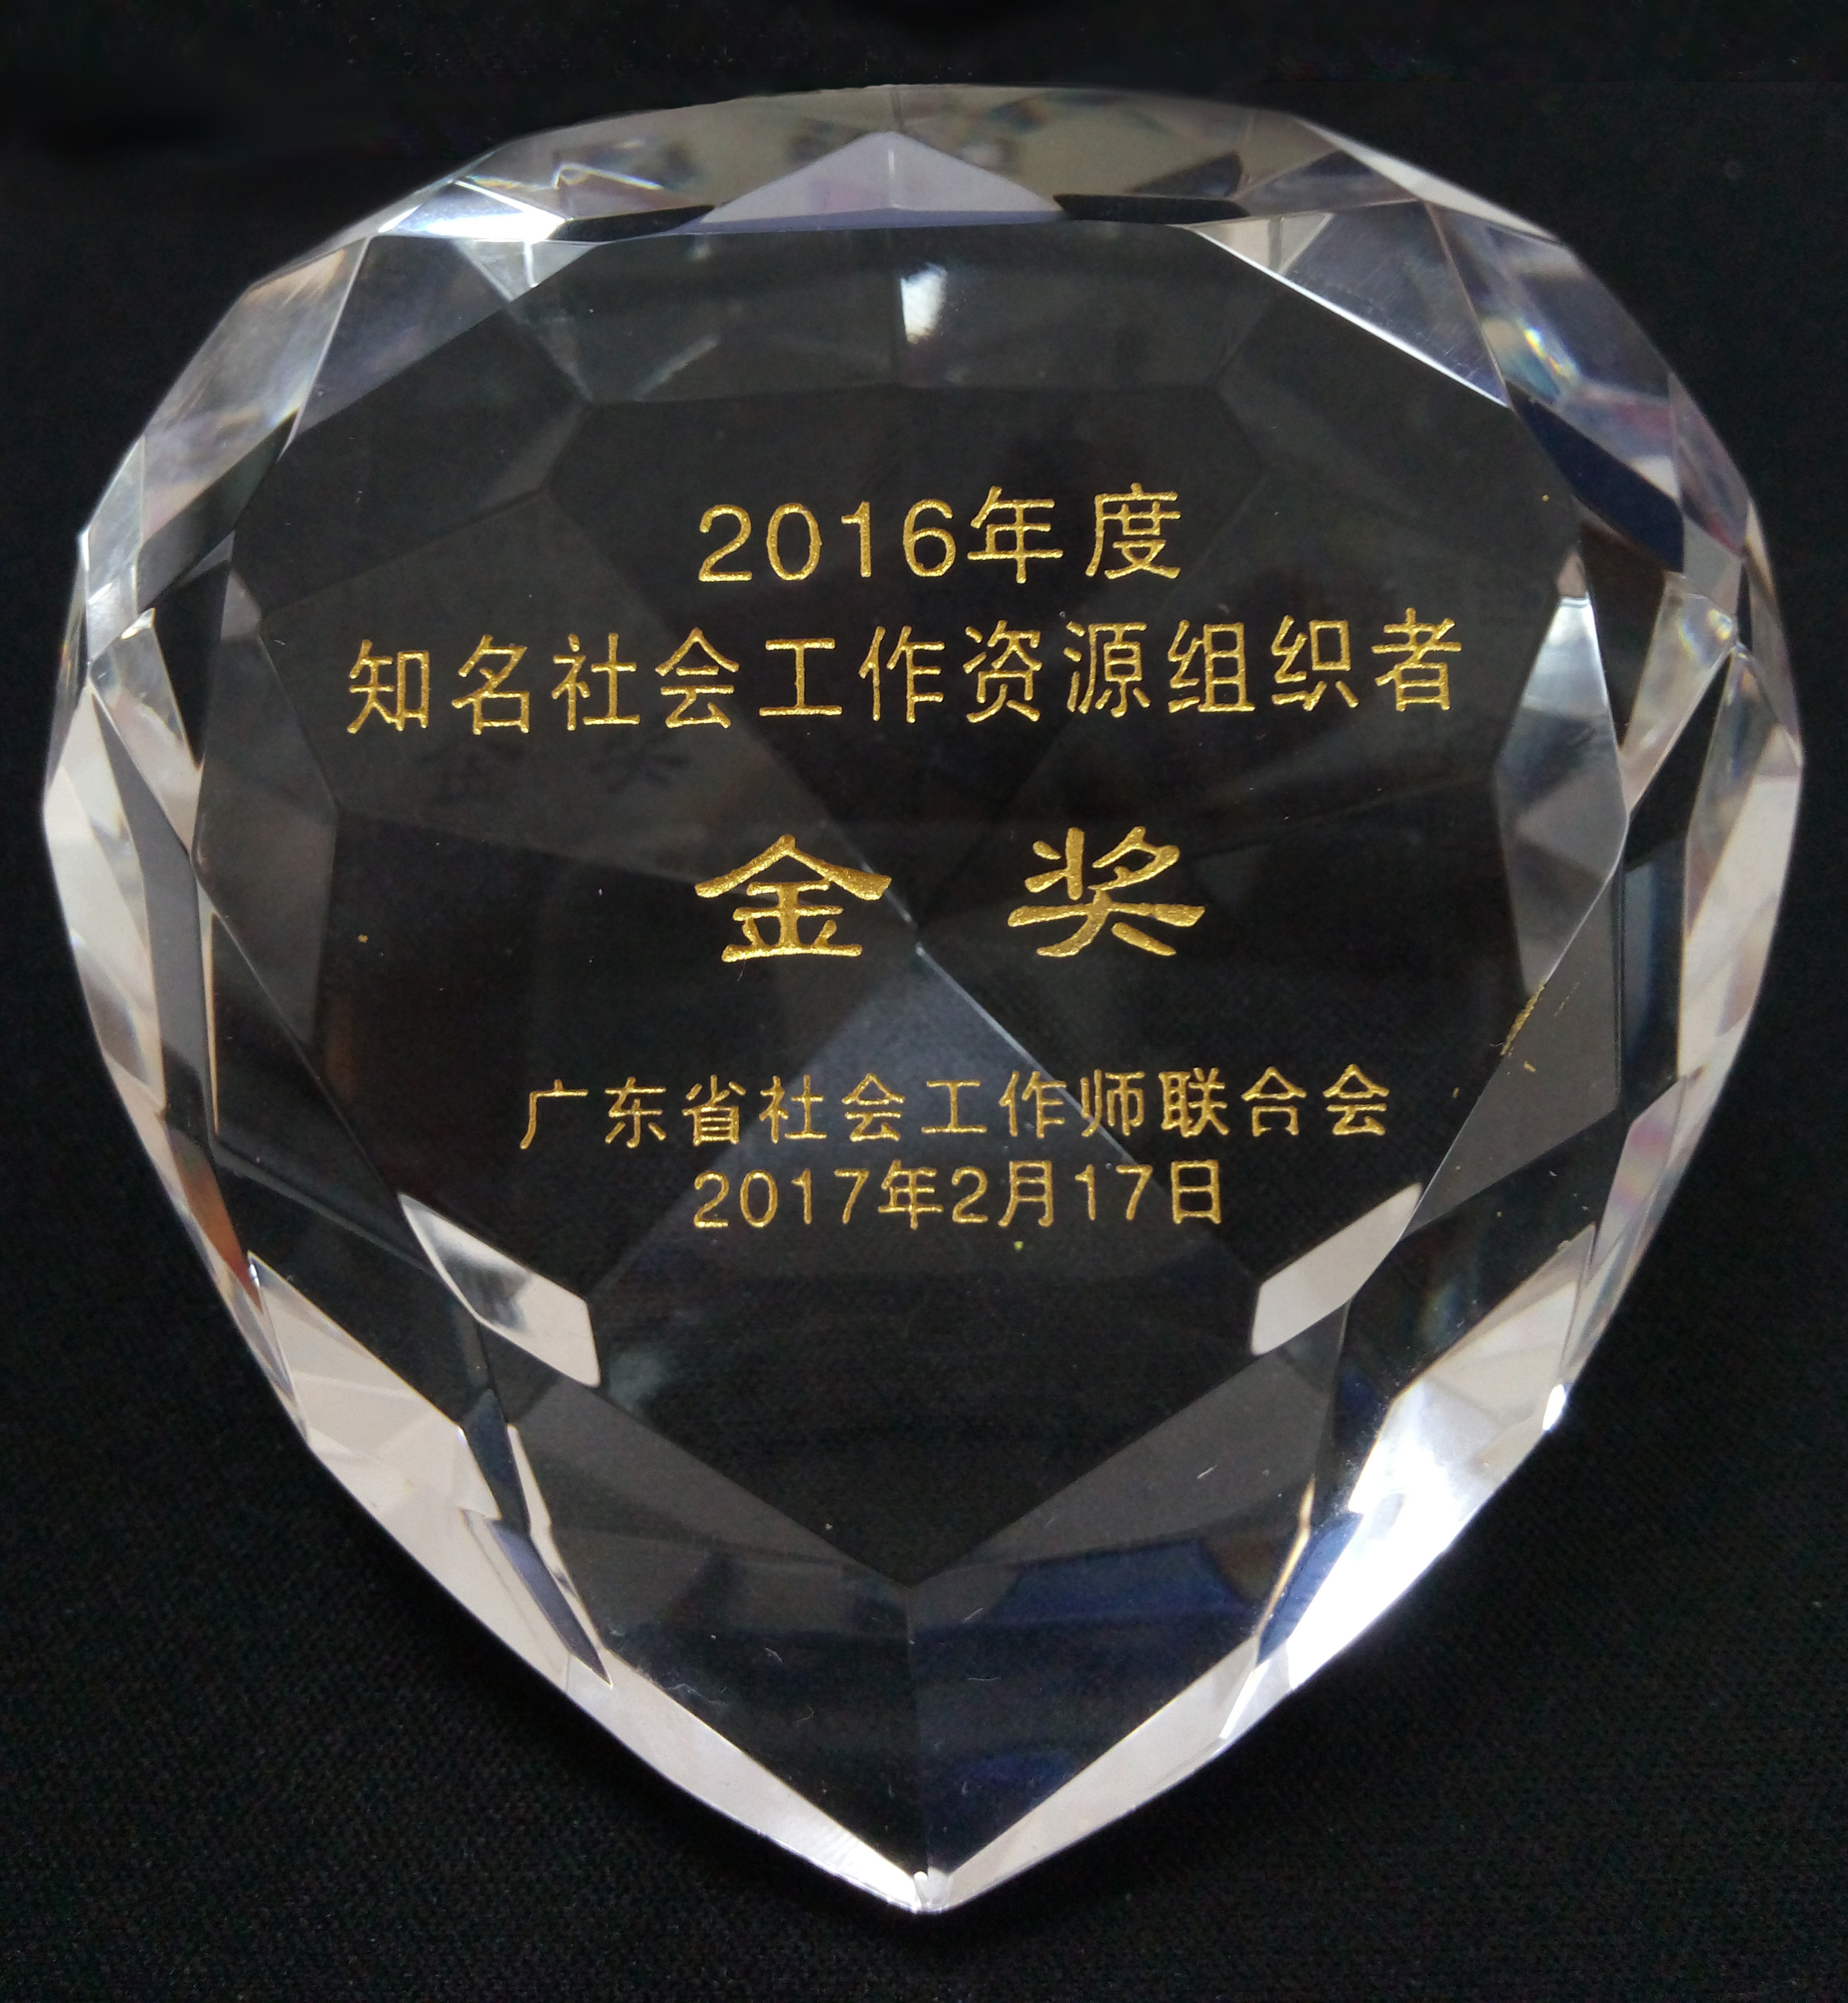 2016年度“知名社会工作资源组织者”金奖(+1).jpg